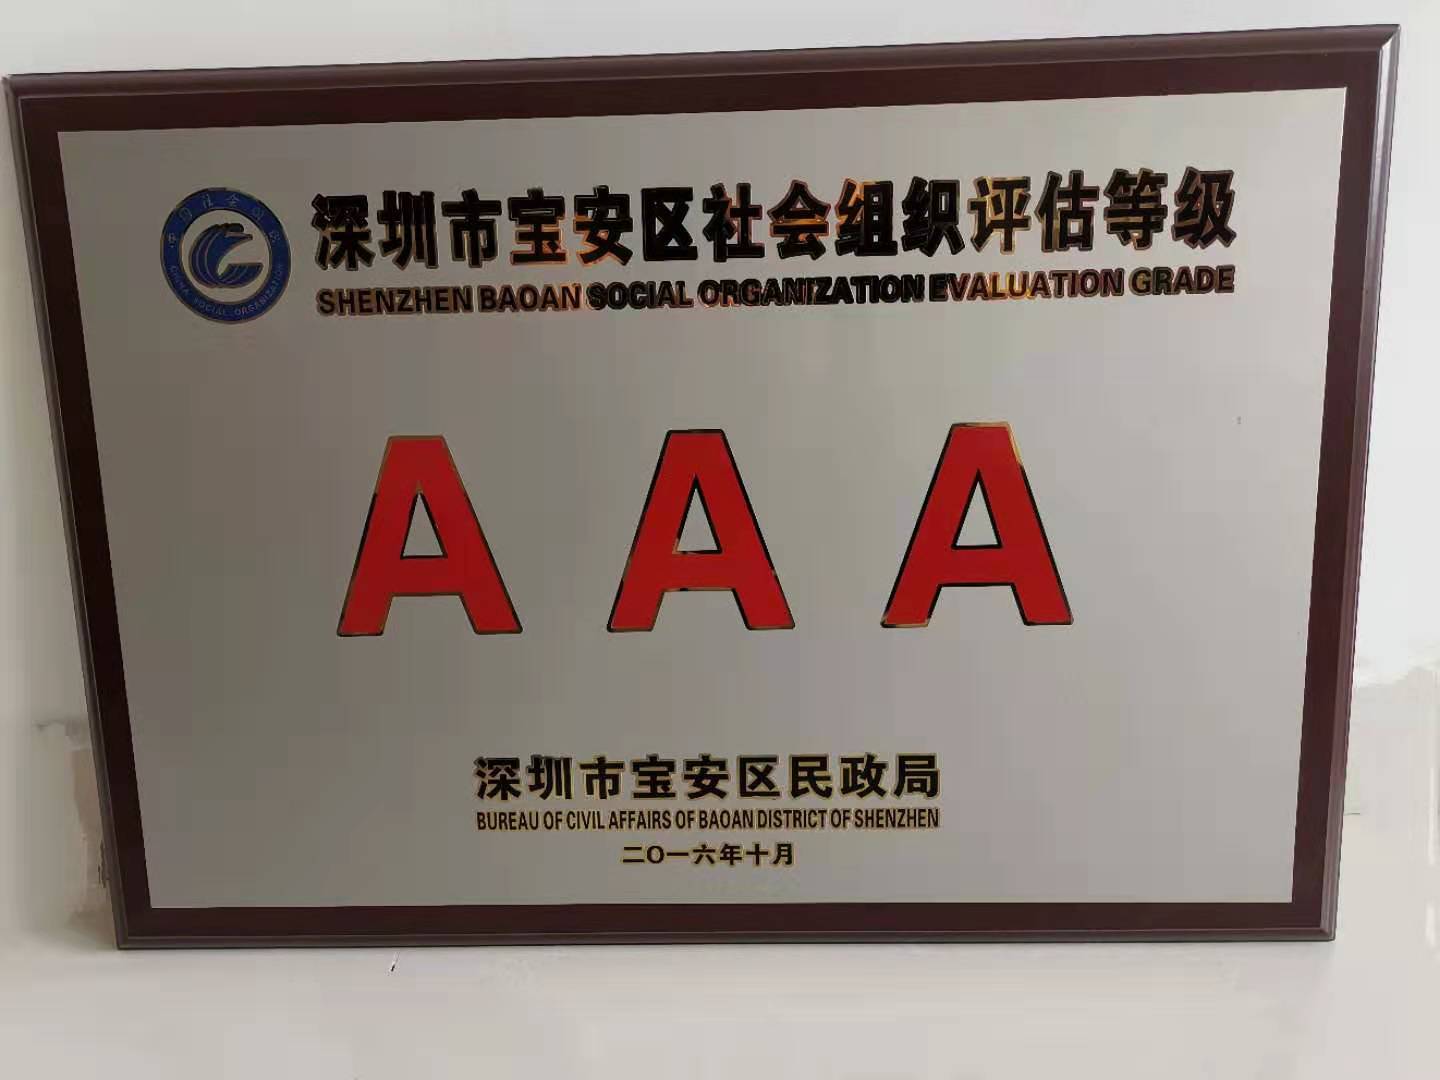 我会获得深圳市宝安区社会组织评估等级3A